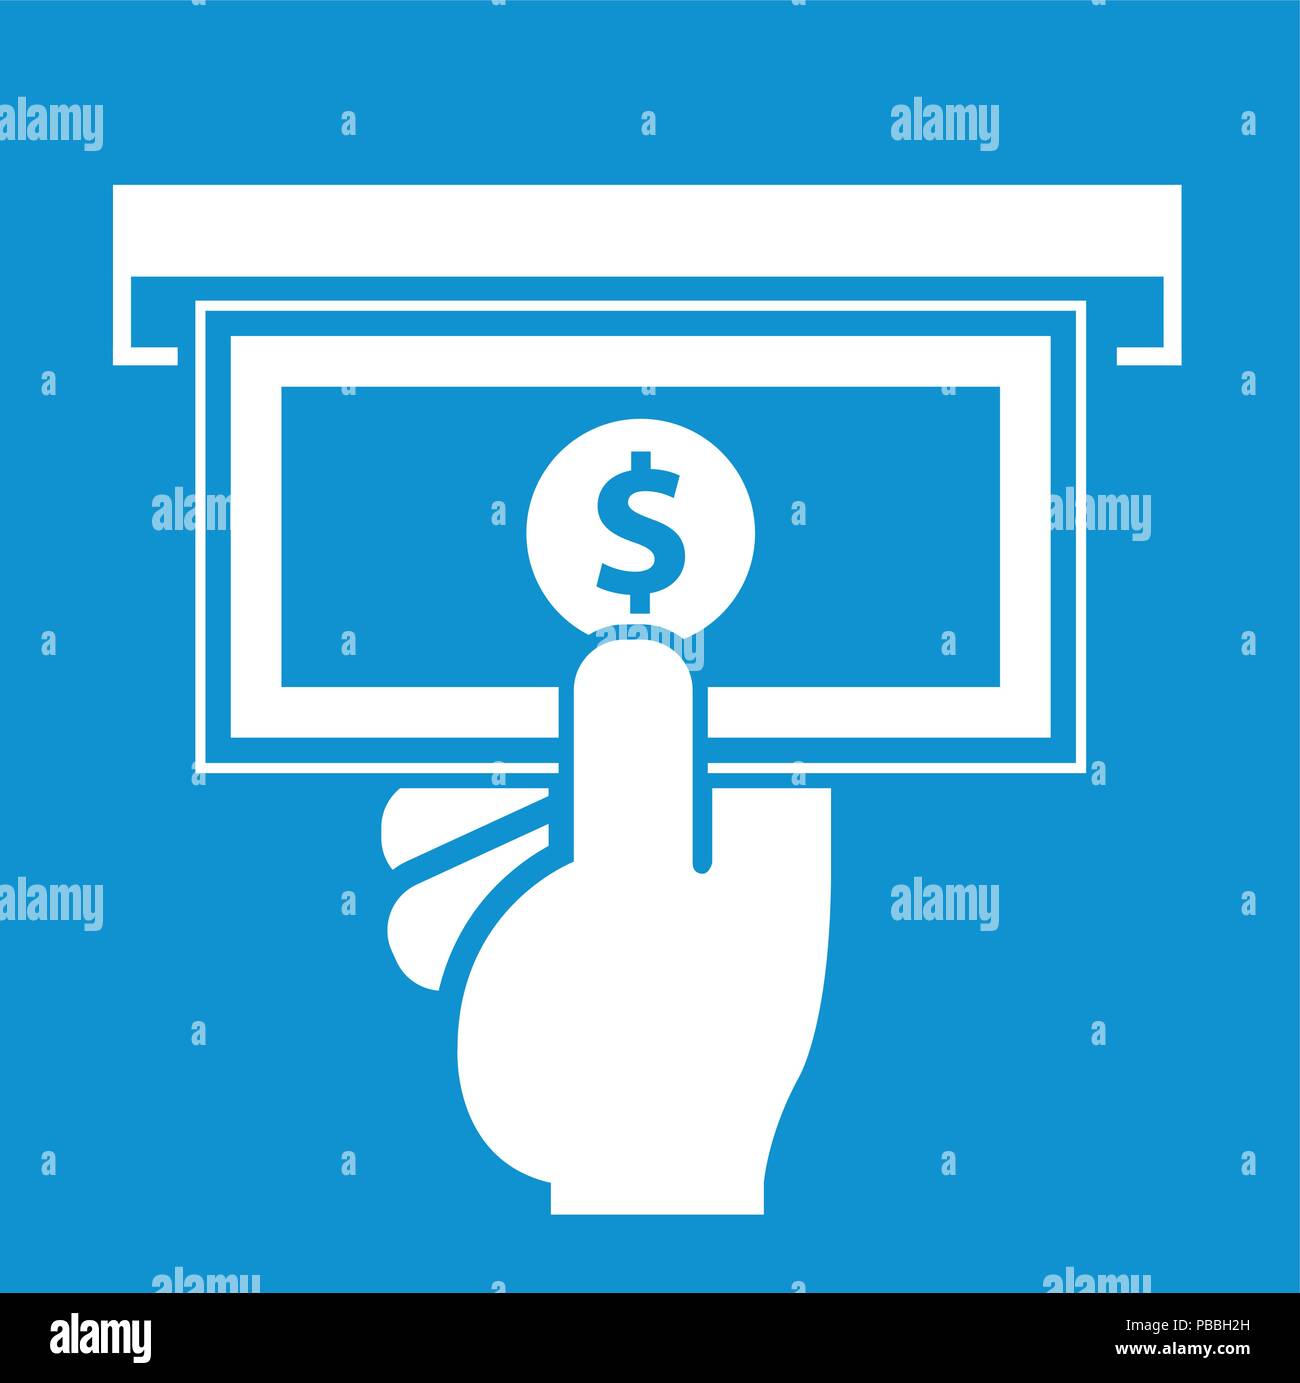 Distributeur automatique de billets, l'icône de glissement sous la main avec atm - dollar Illustration de Vecteur